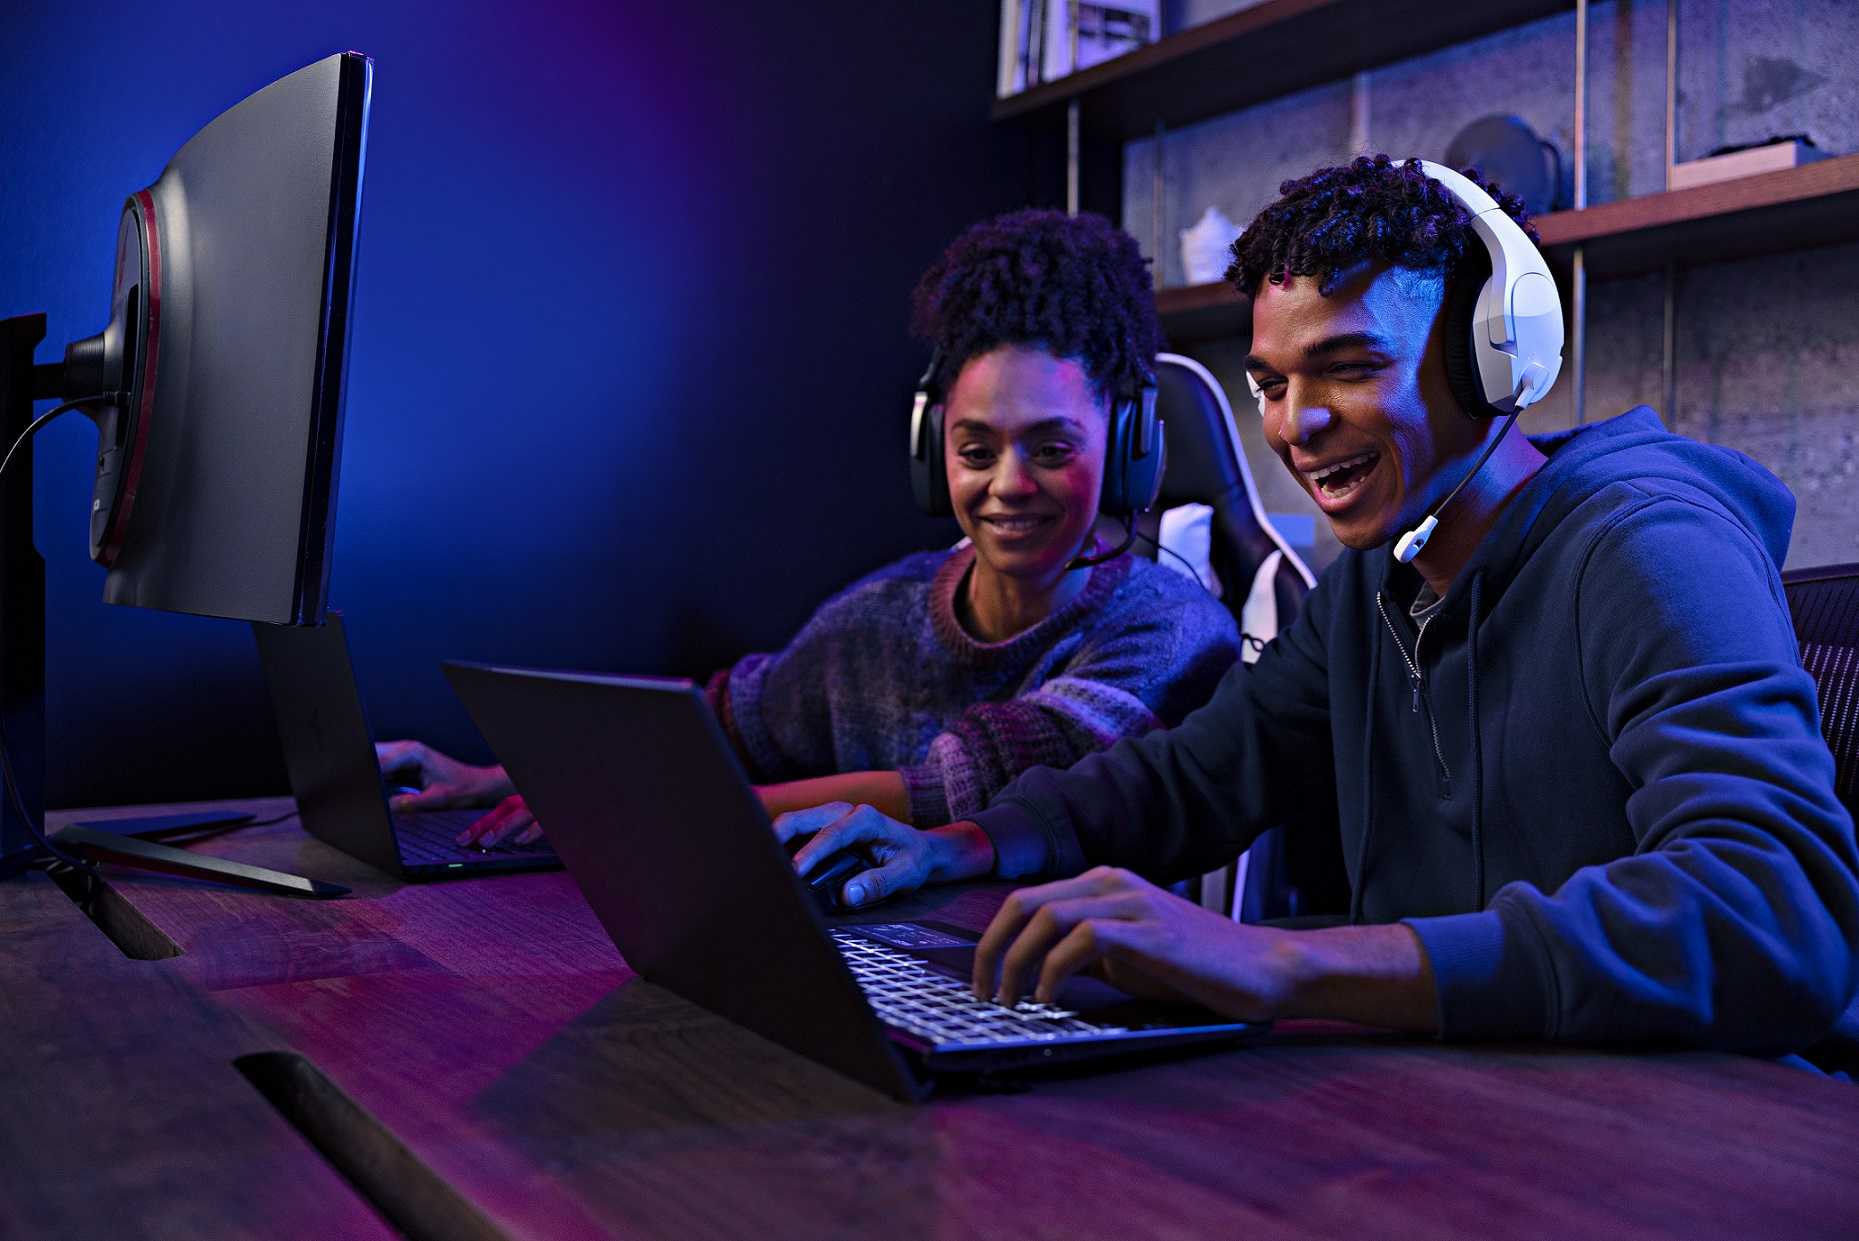 Foto de Rendimiento y almacenamiento: dos de las principales características para elegir un PC durante Intel Gaming Week